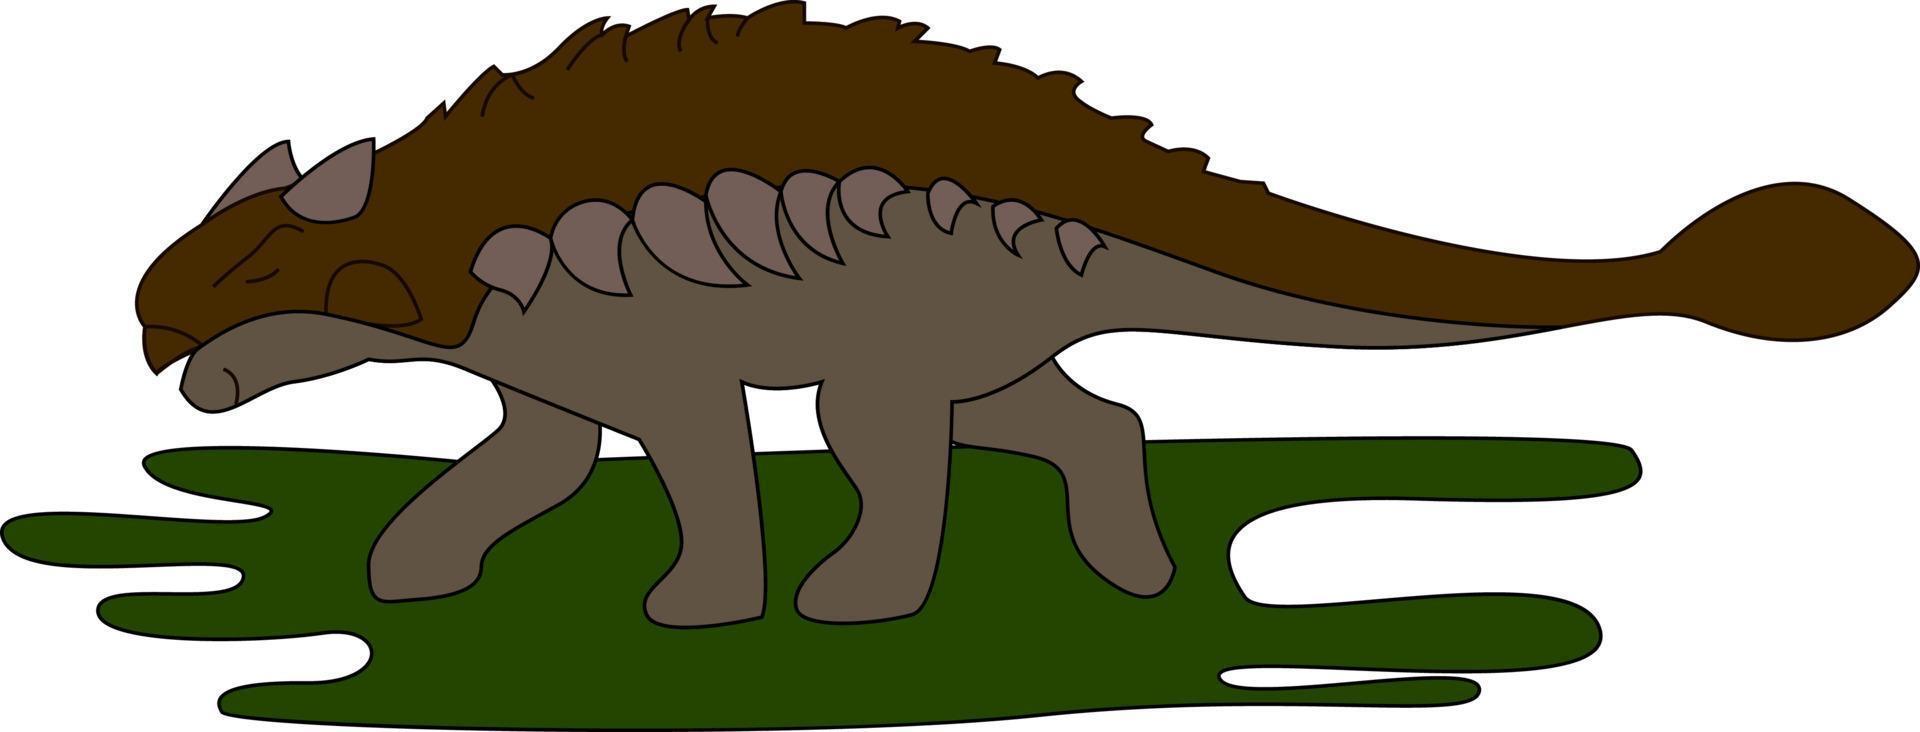 Ankylosaurus on grass, illustration, vector on white background.